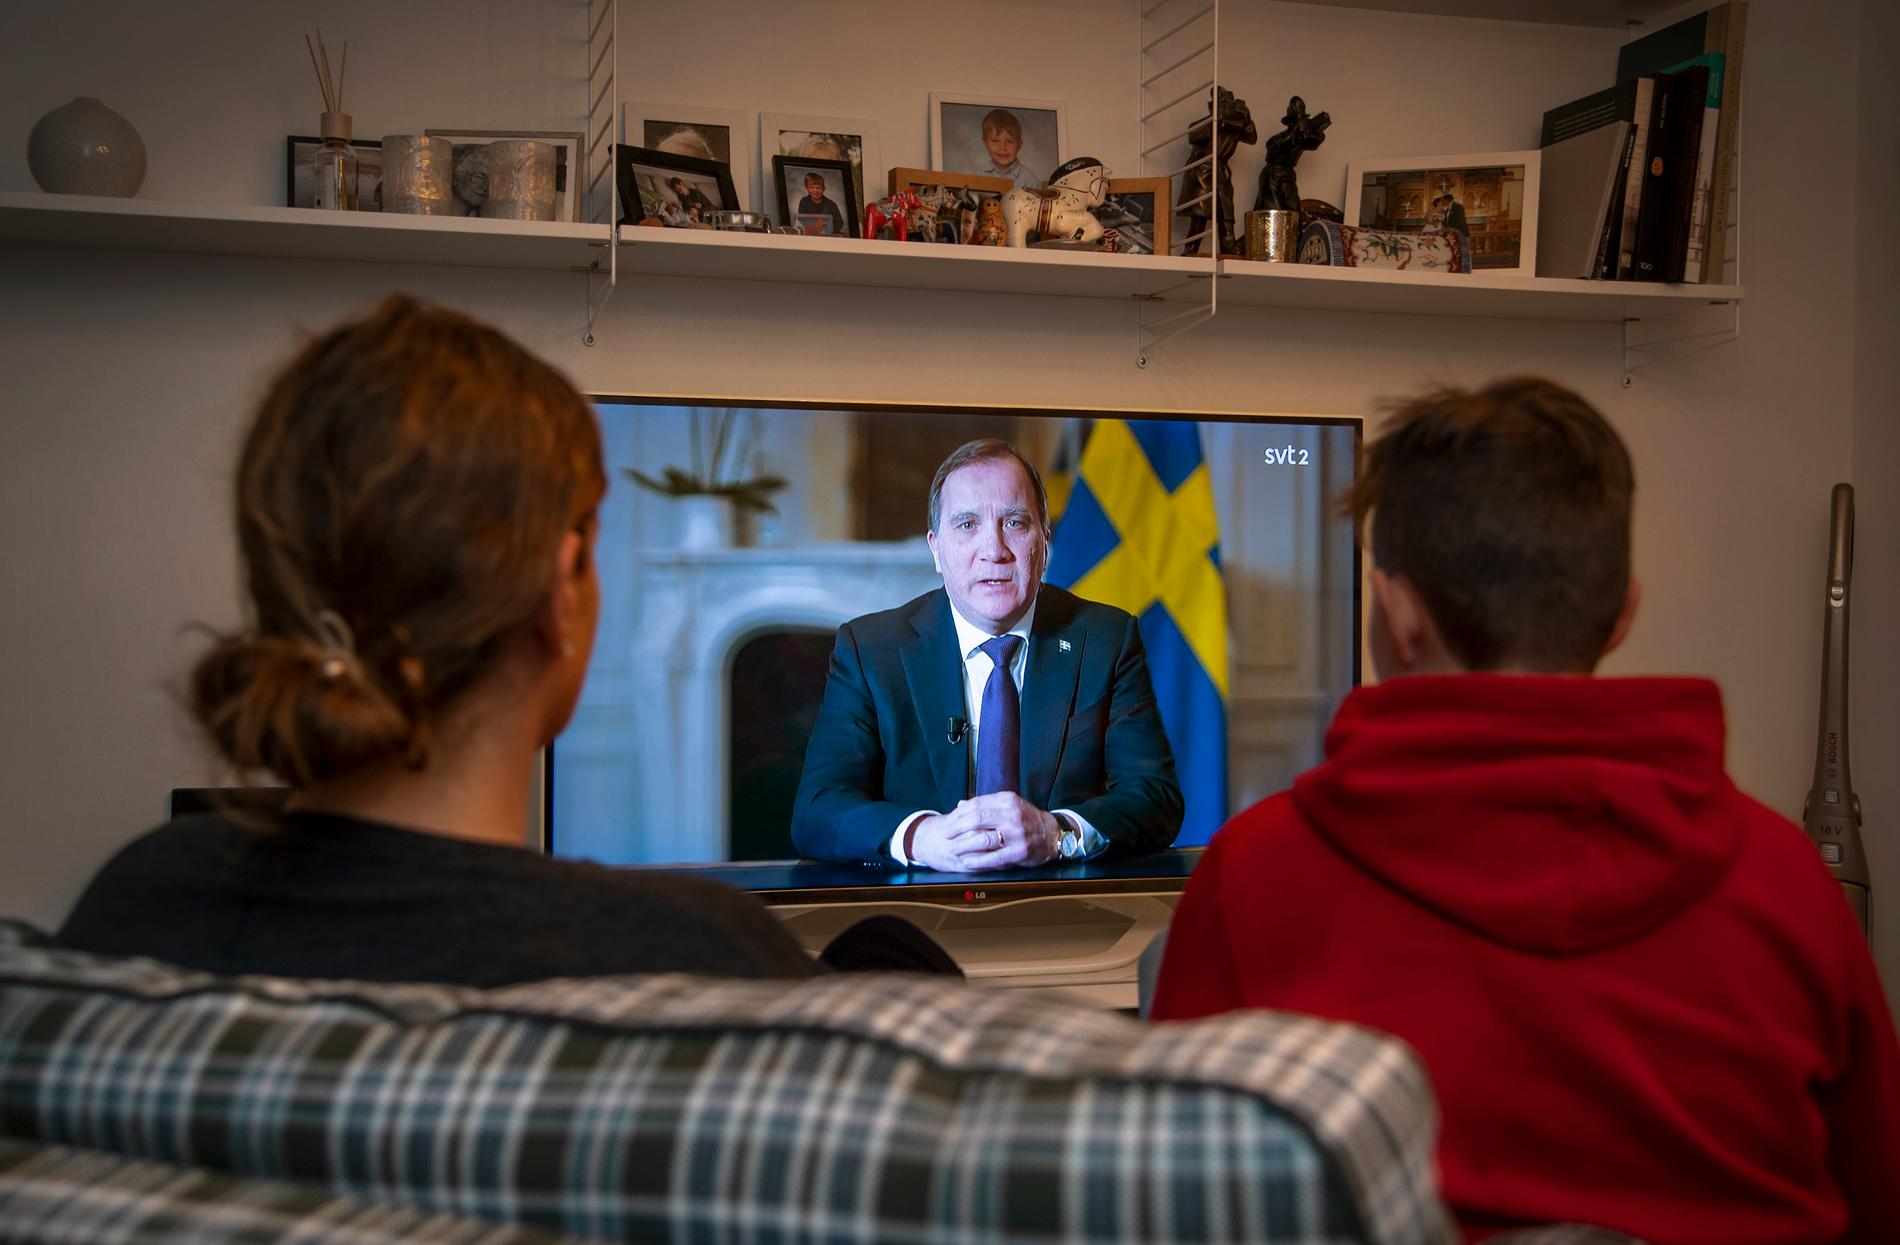 Statsminister Stefan Löfven (S) håller ett tal till nationen i SVT med anledning av coronapandemin.